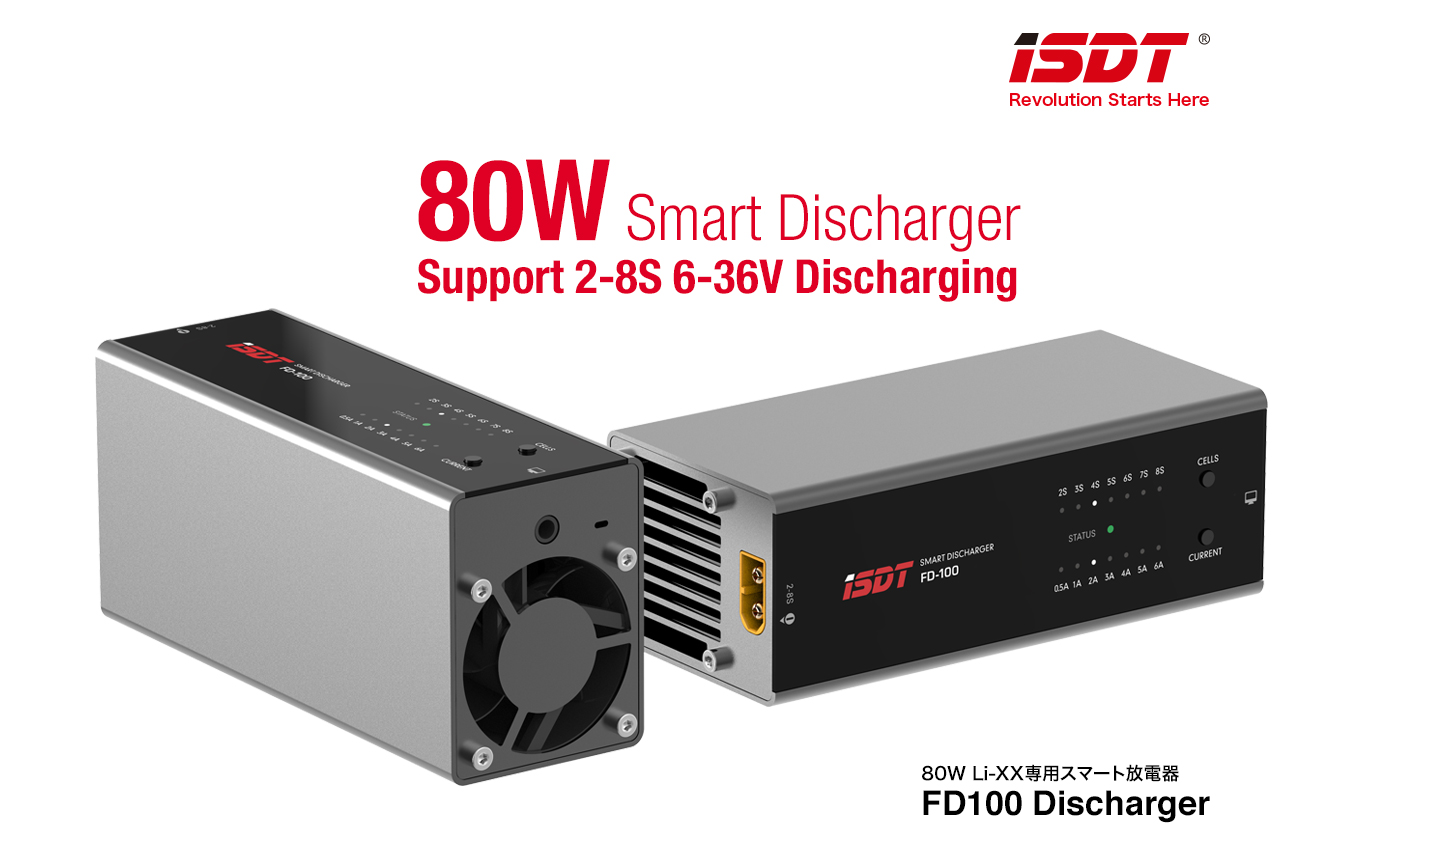 80W Li-XX系専用スマート放電器 iSDT FD100 Discharger